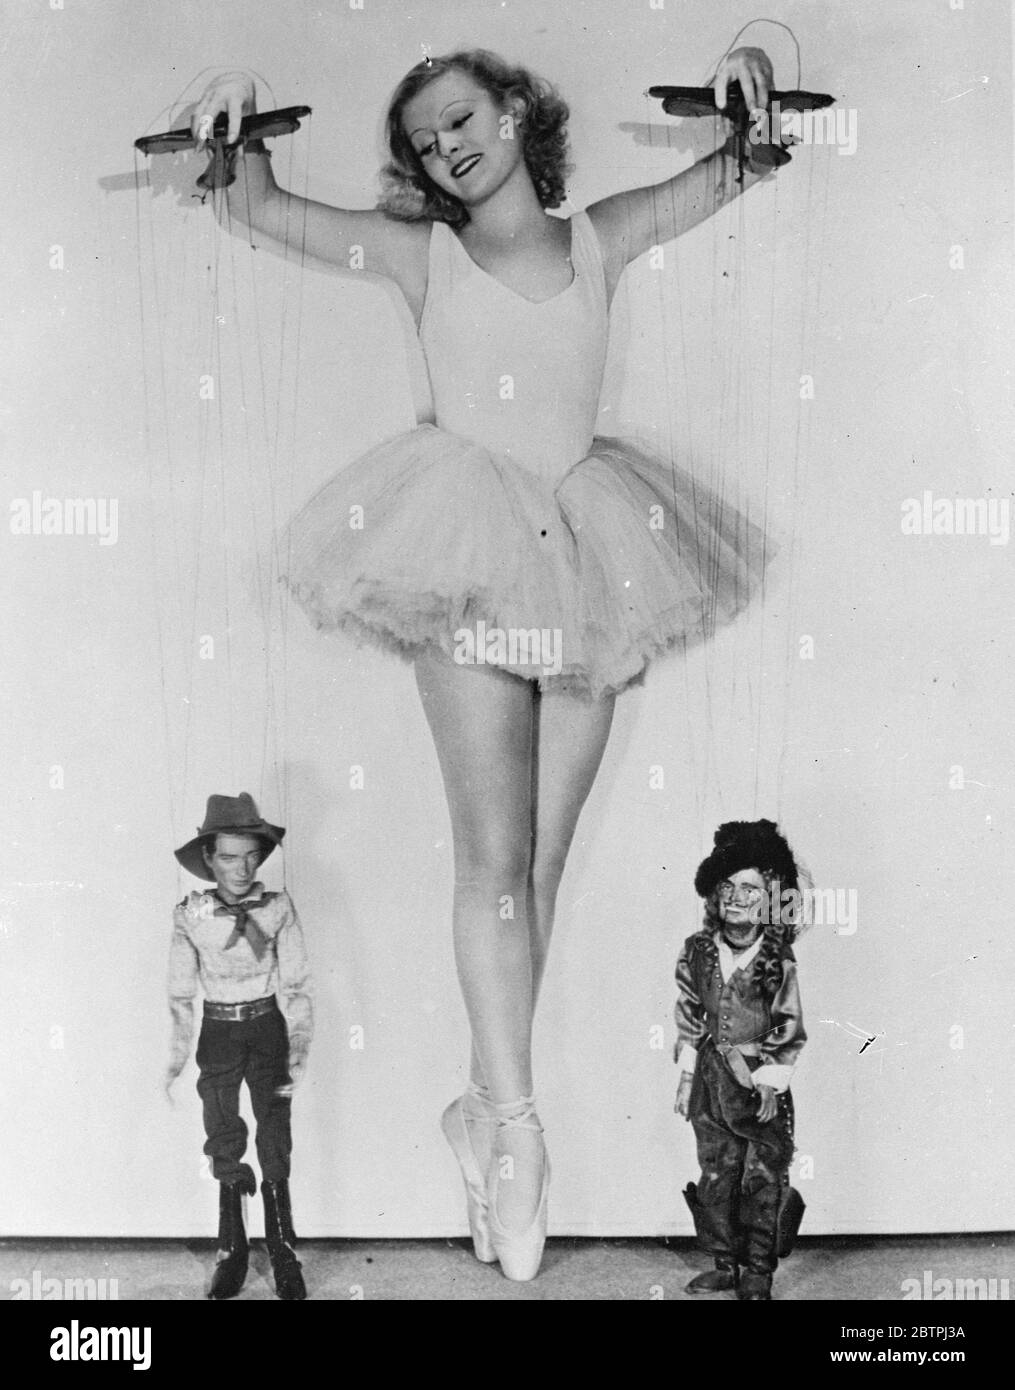 Bloße Puppen . Lillian Harvey, die in England geborene hollywood-Filmschauspielerin, demonstriert ihr Können bei der Manipulation von Marionetten von Gary Cooper und Douglas Fairbanks, zwei weiteren Lieblingsfilmen. 18 Dezember 1933 Stockfoto